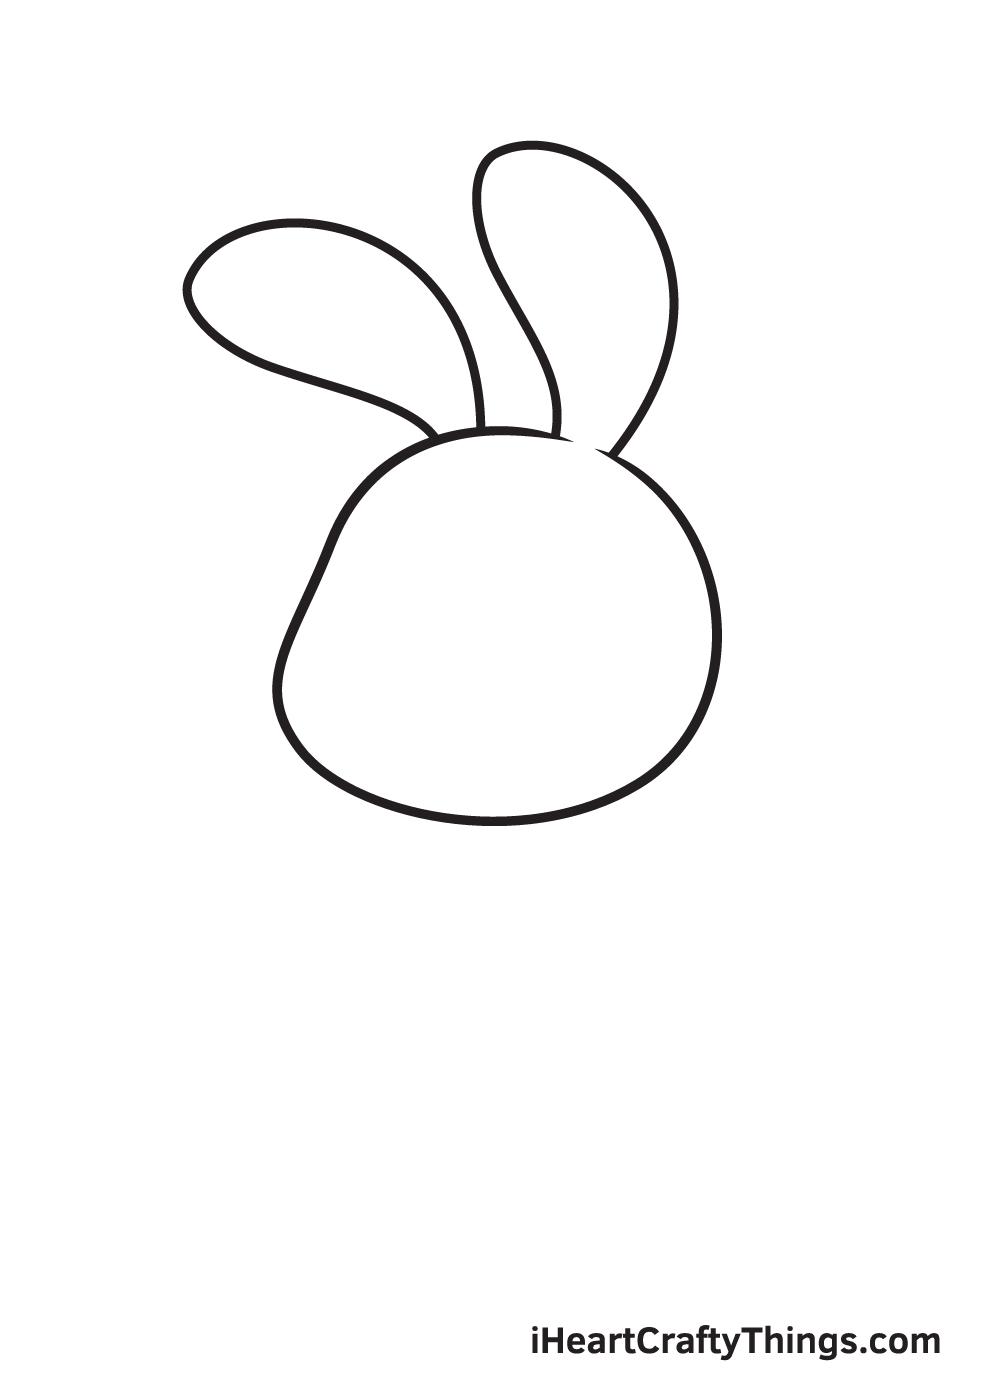 Vẽ chú thỏ - Bước 2